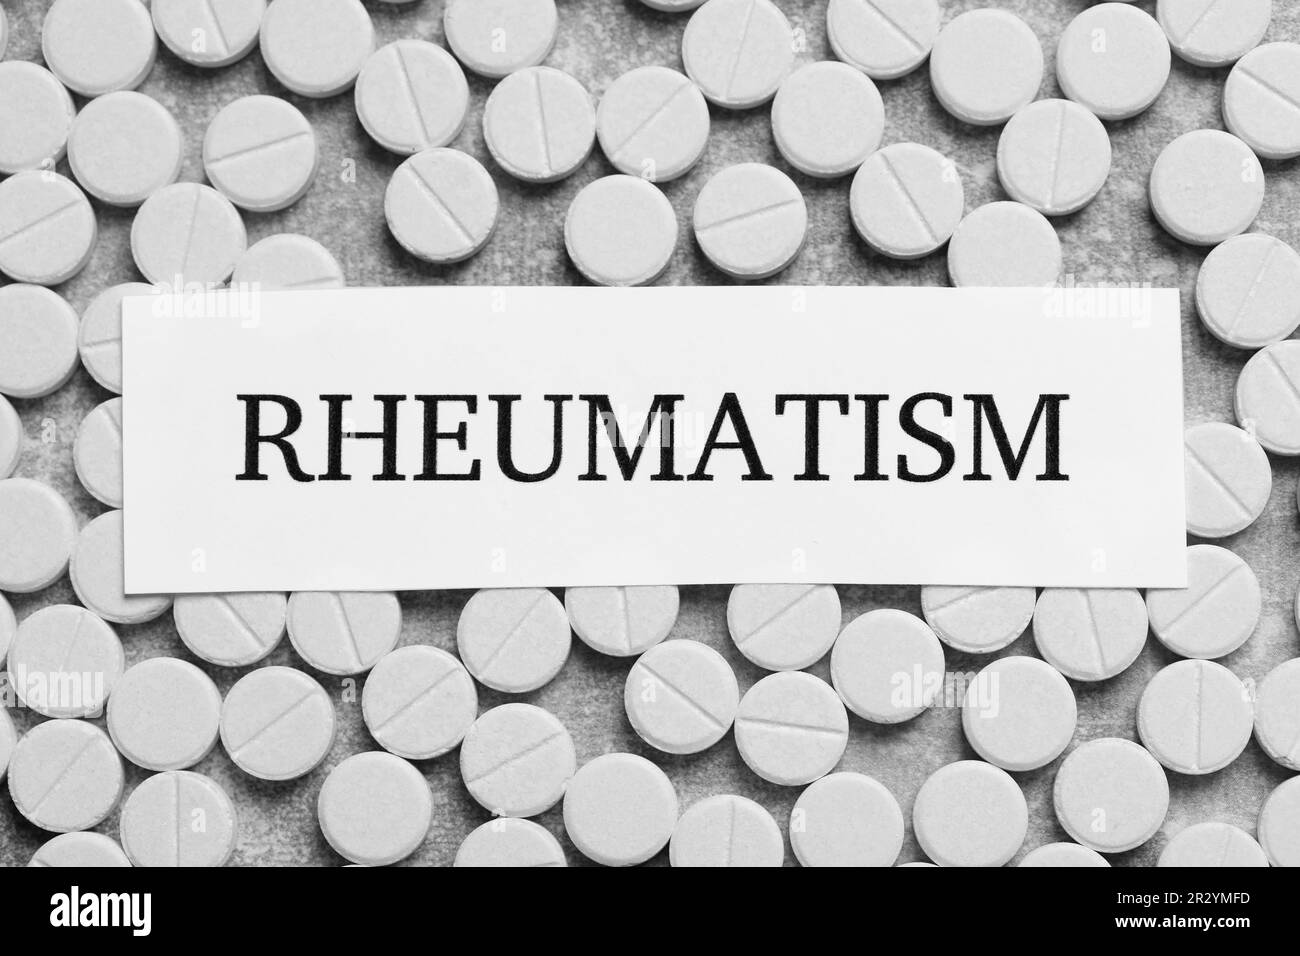 Scheda con parola Rheumatism e pillole su sfondo grigio chiaro, piatto Foto Stock